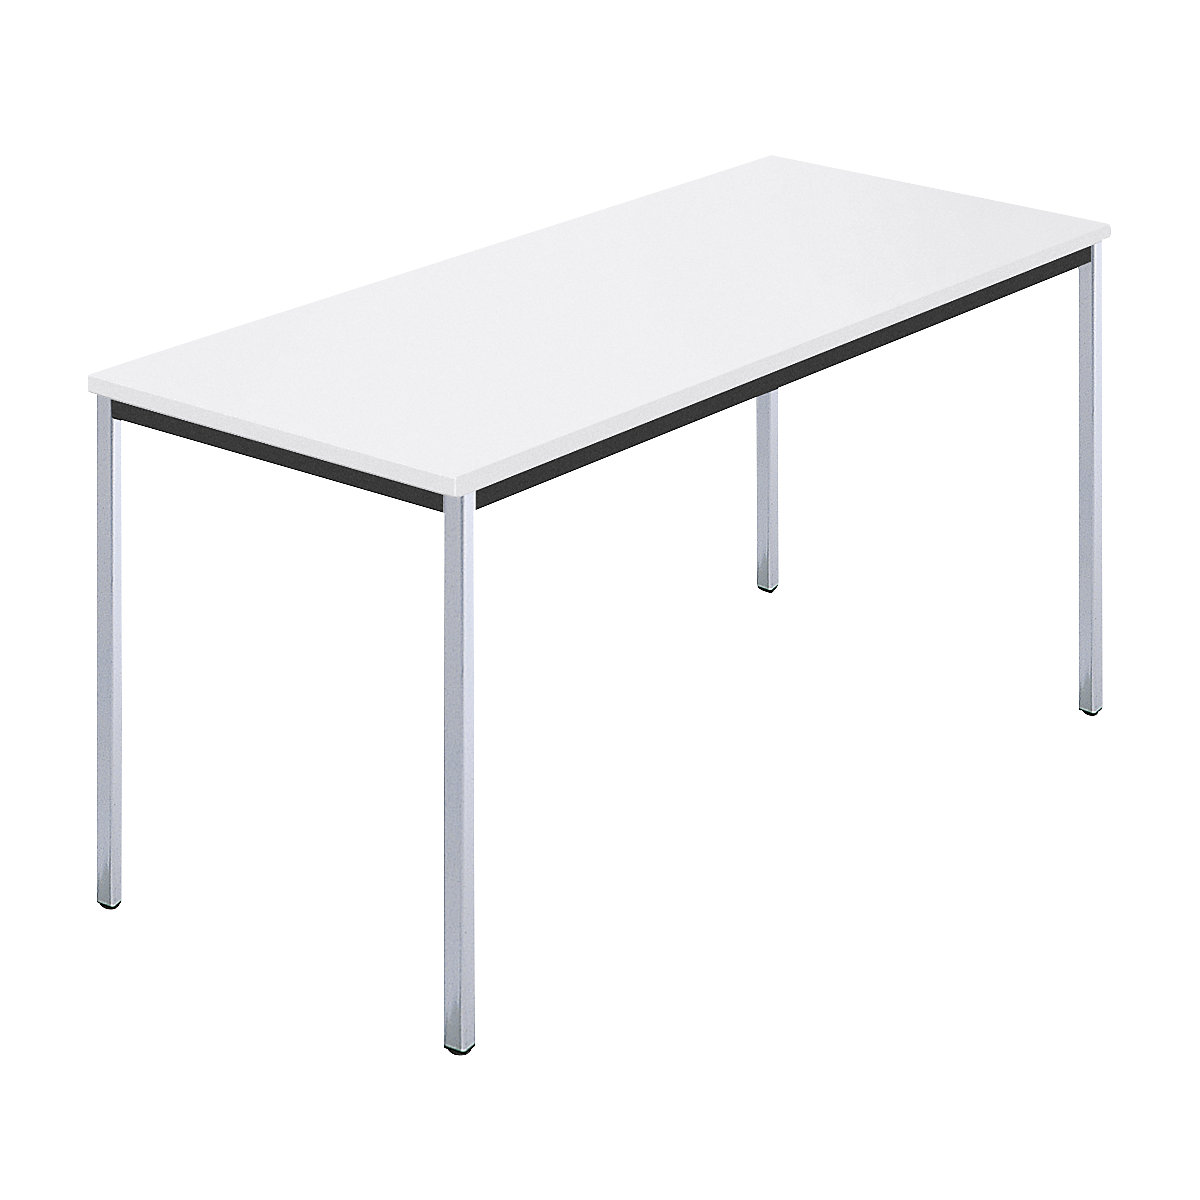 Rechthoekige tafel, met vierkante, verchroomde tafelpoten, b x d = 1400 x 700 mm, wit-5